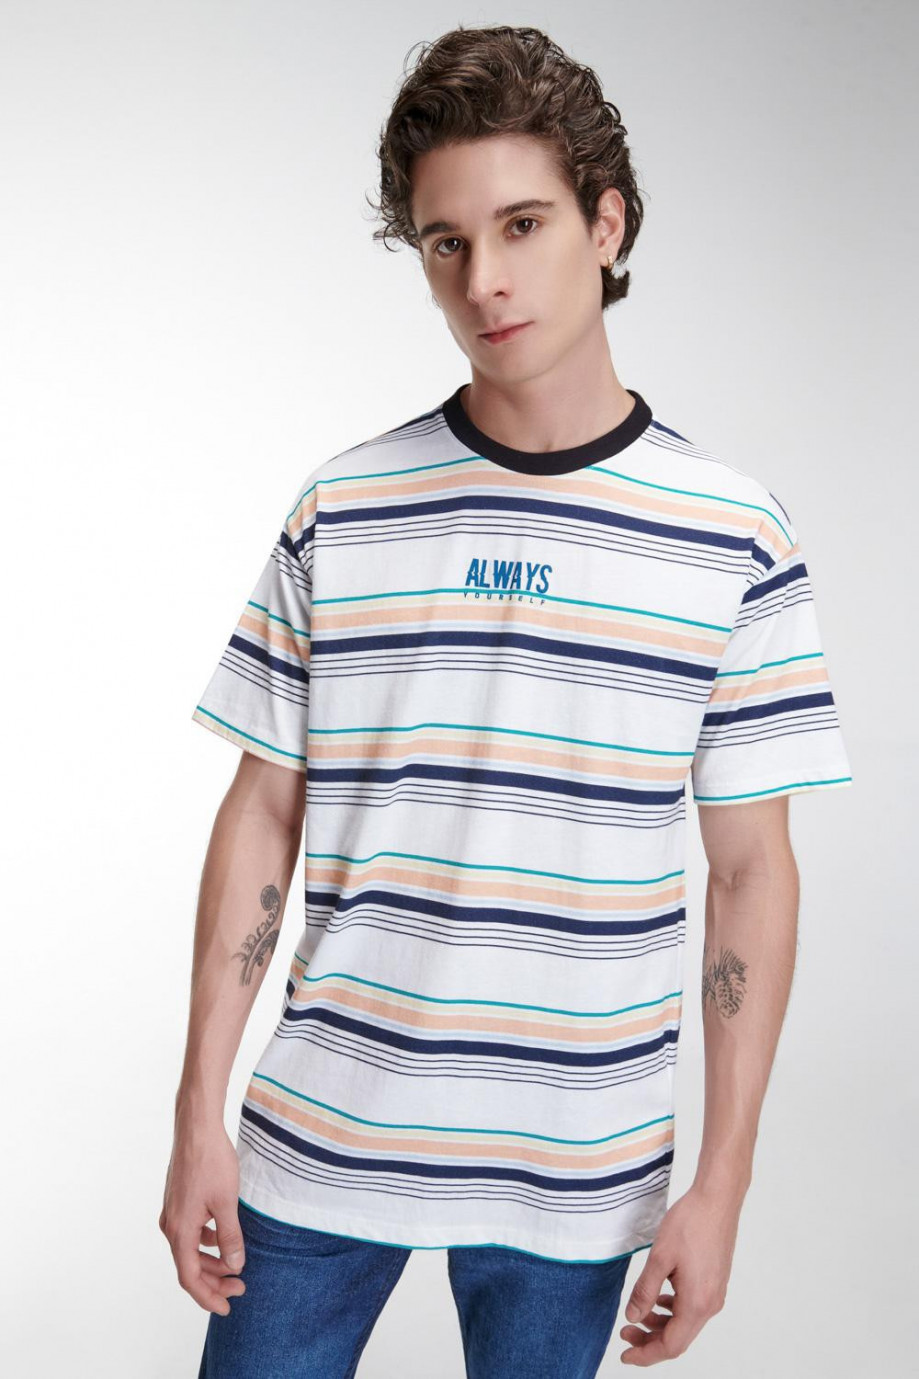 Camiseta unicolor manga corta con diseño de rayas y letras